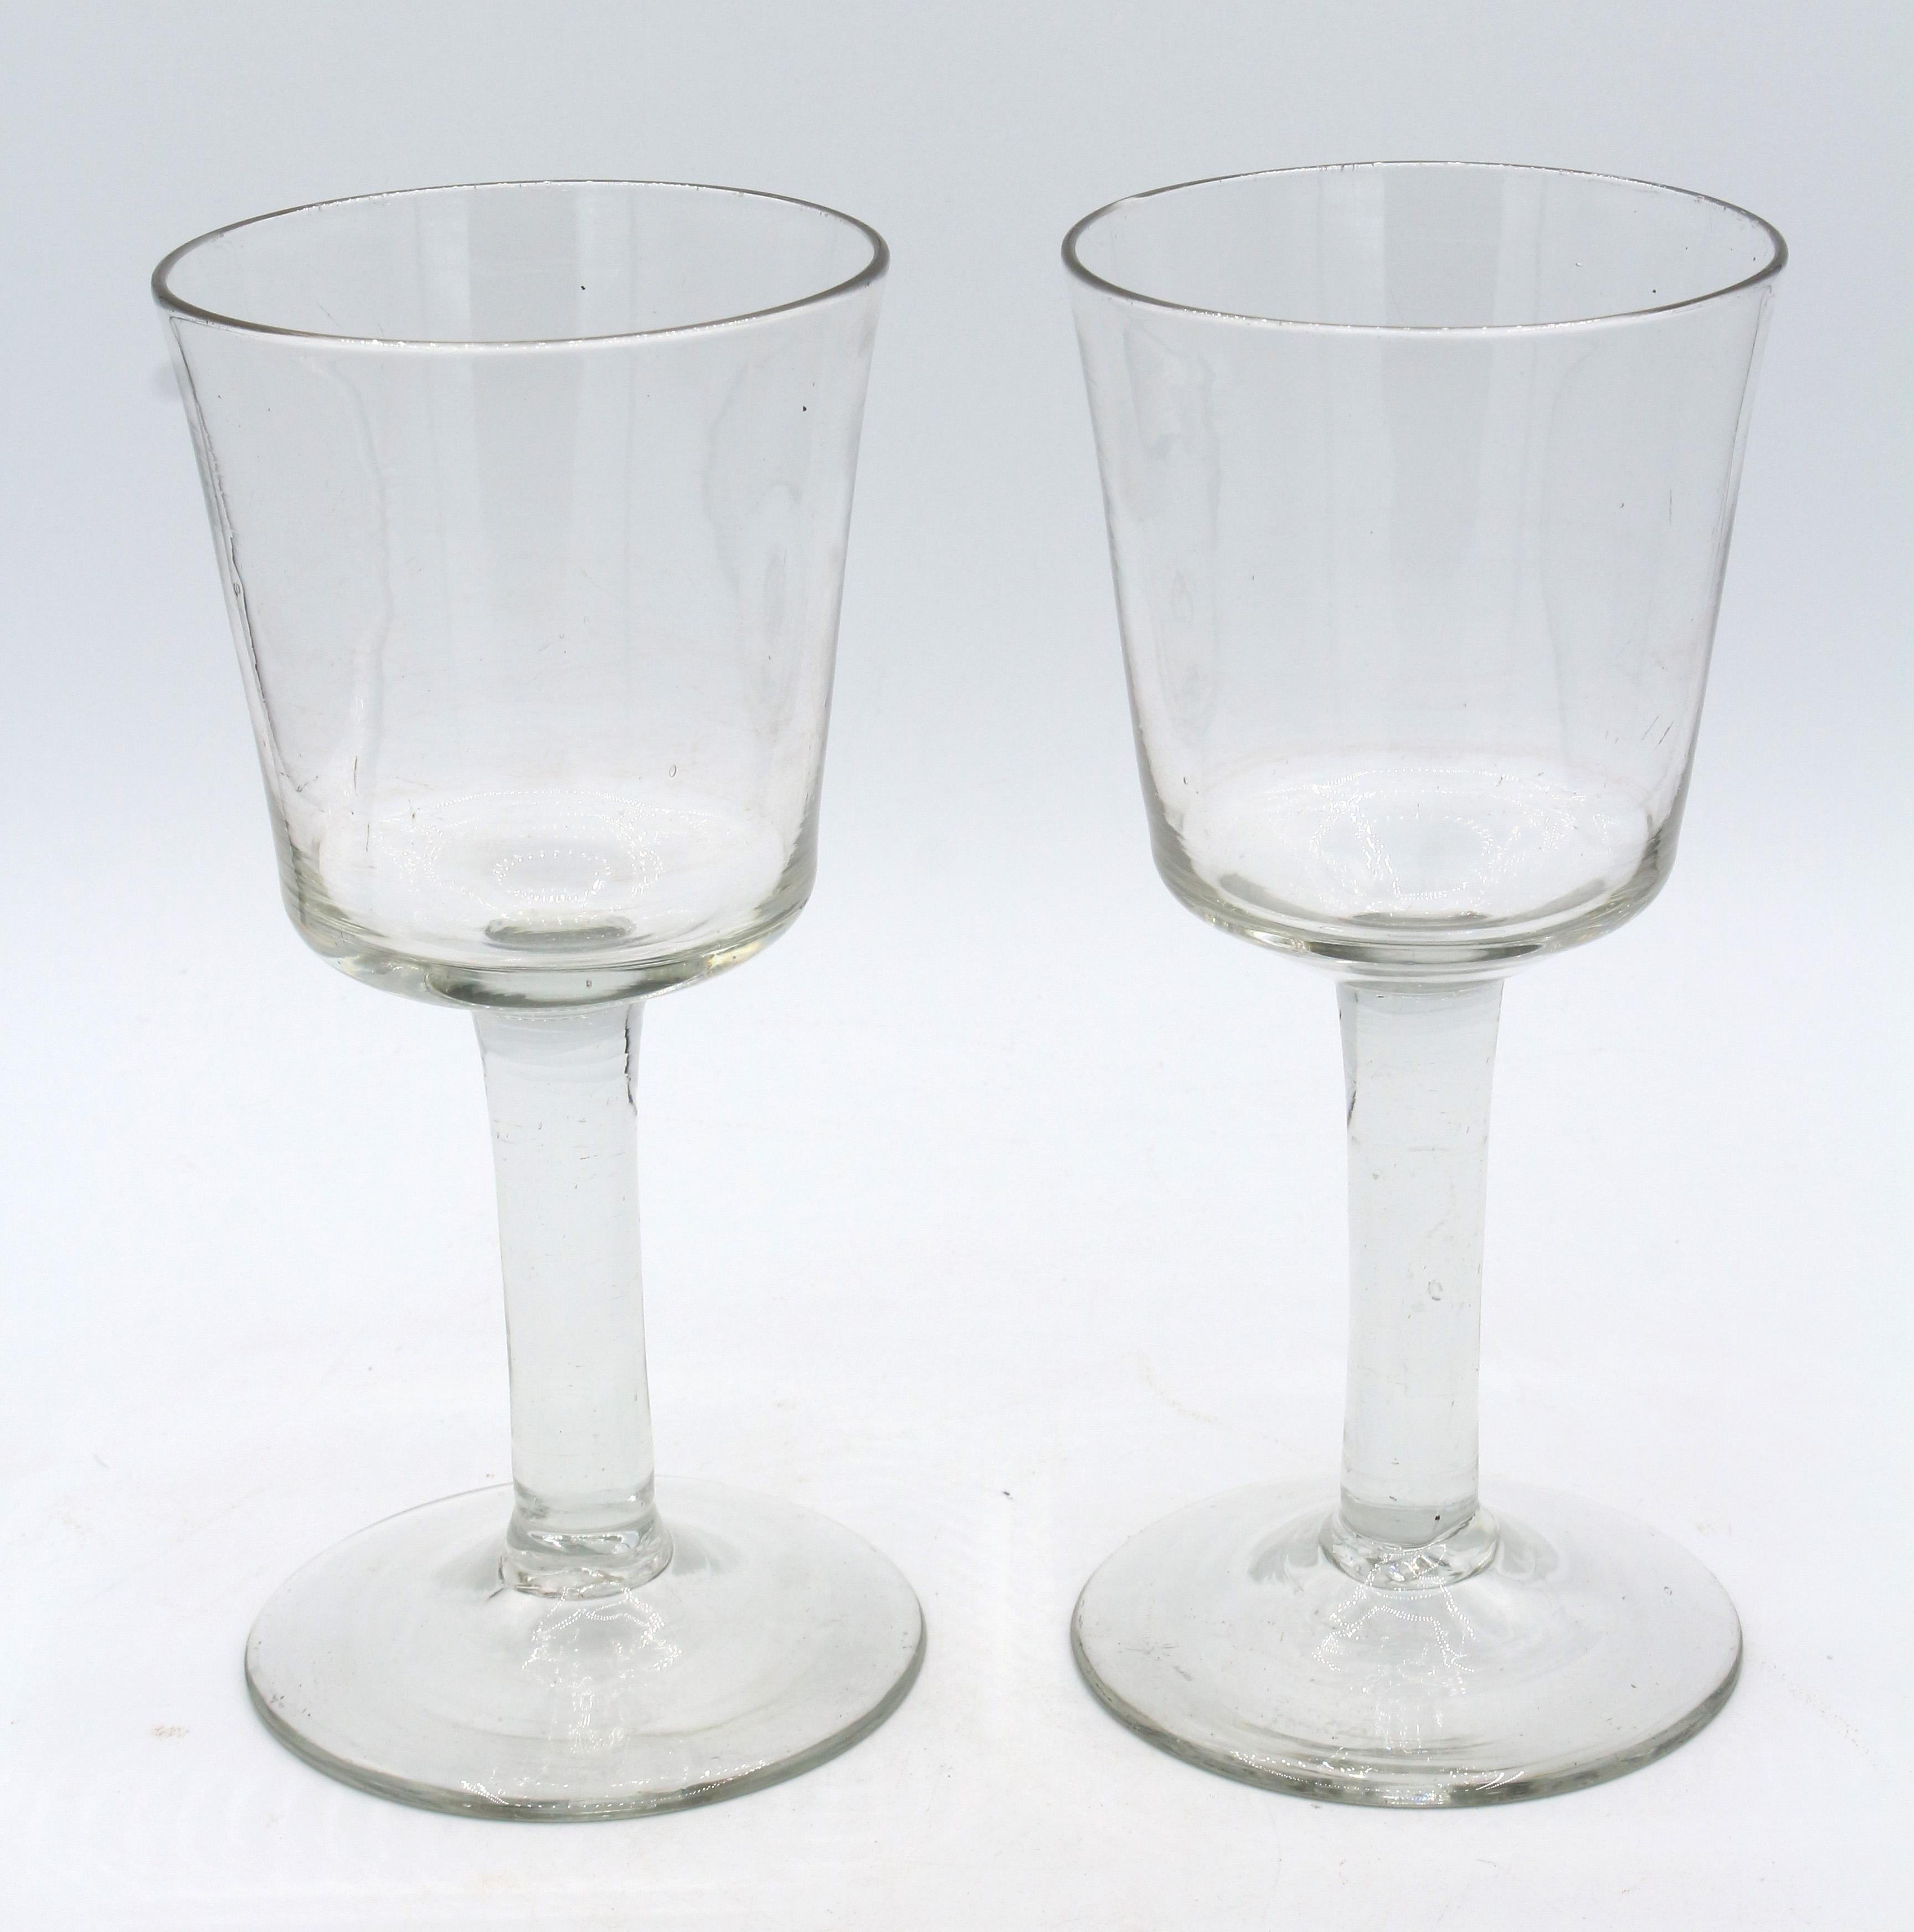 Paar frühe georgianische Gläser, um 1740, England. Handgefertigt, jeweils mit Eimerschale auf einfachem Stiel. Großzügige konische Füße. Intakte Paare sind selten zu finden. Gute Farbe, Rillen und Werkzeugspuren. Grob geknickte Brückenpfeiler.